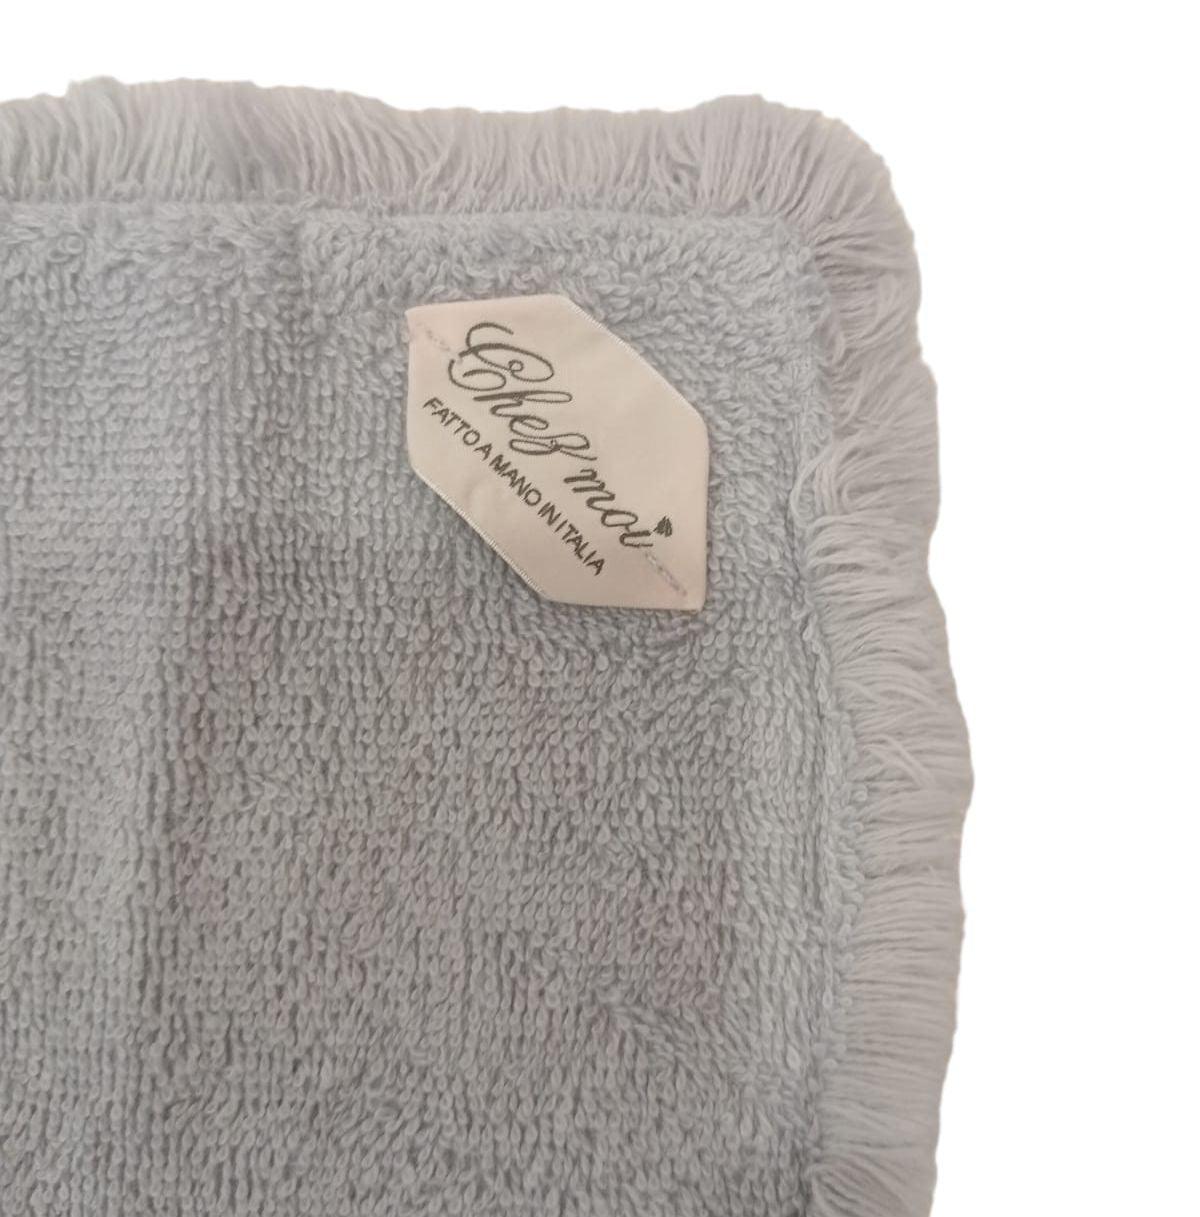 Lavette set da 3 asciugamani bagno con elegante sacchetto di lino, colore: Grigio Perla, 100% Made in Italy - Chez Moi - MARIKA DE PAOLA - HOME DECOR